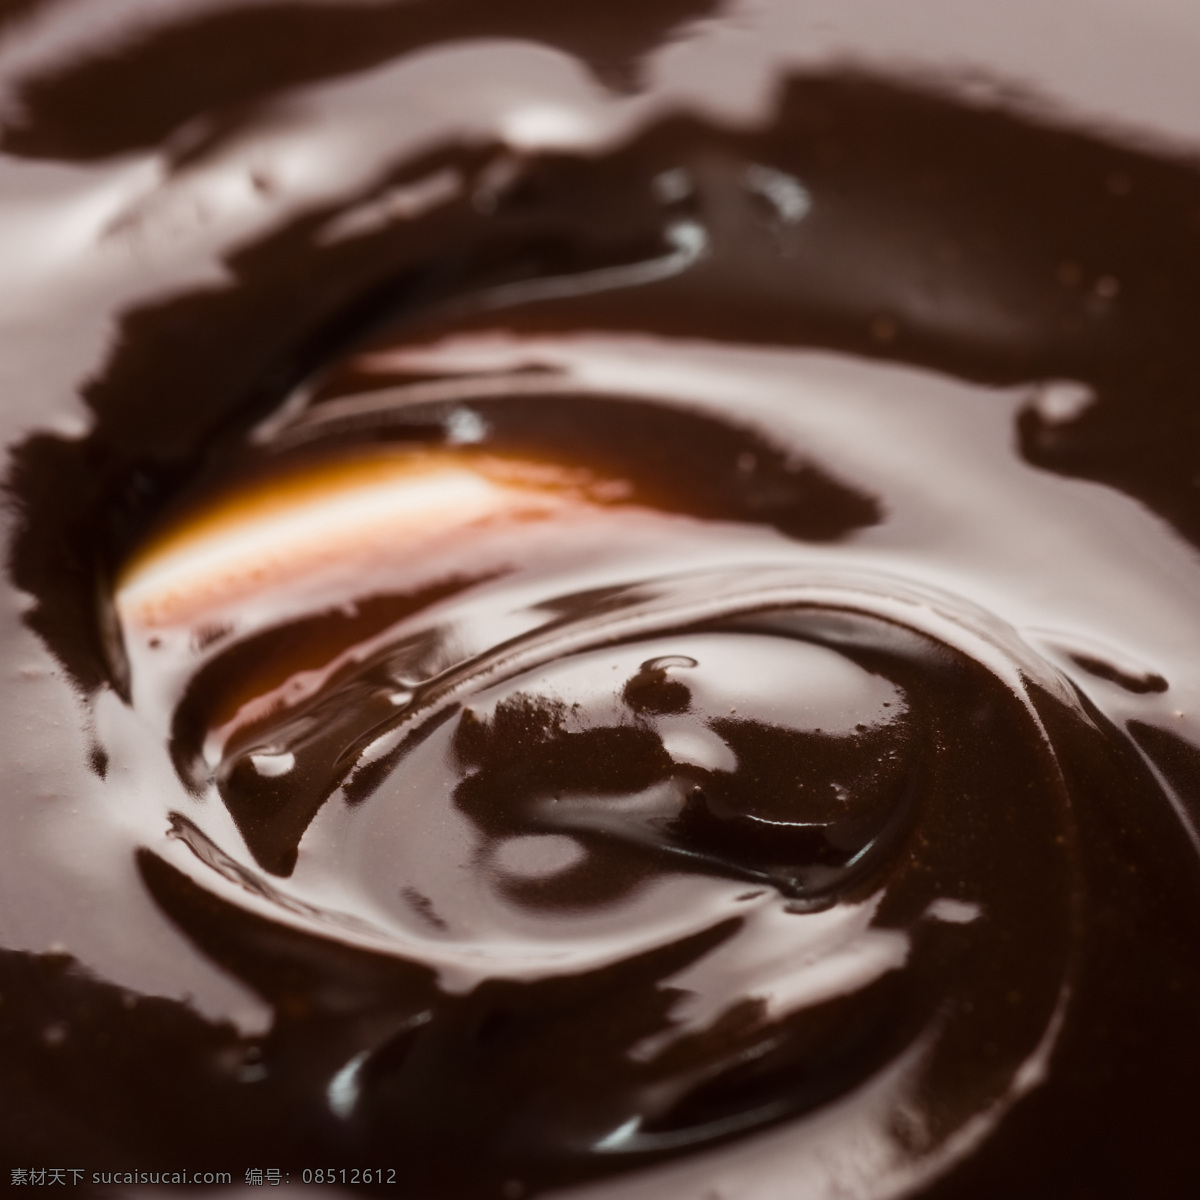 巧克力 背景 纹理 巧克力纹理 巧克力背景 朱古力 巧克力美食 食物摄影 点心图片 餐饮美食